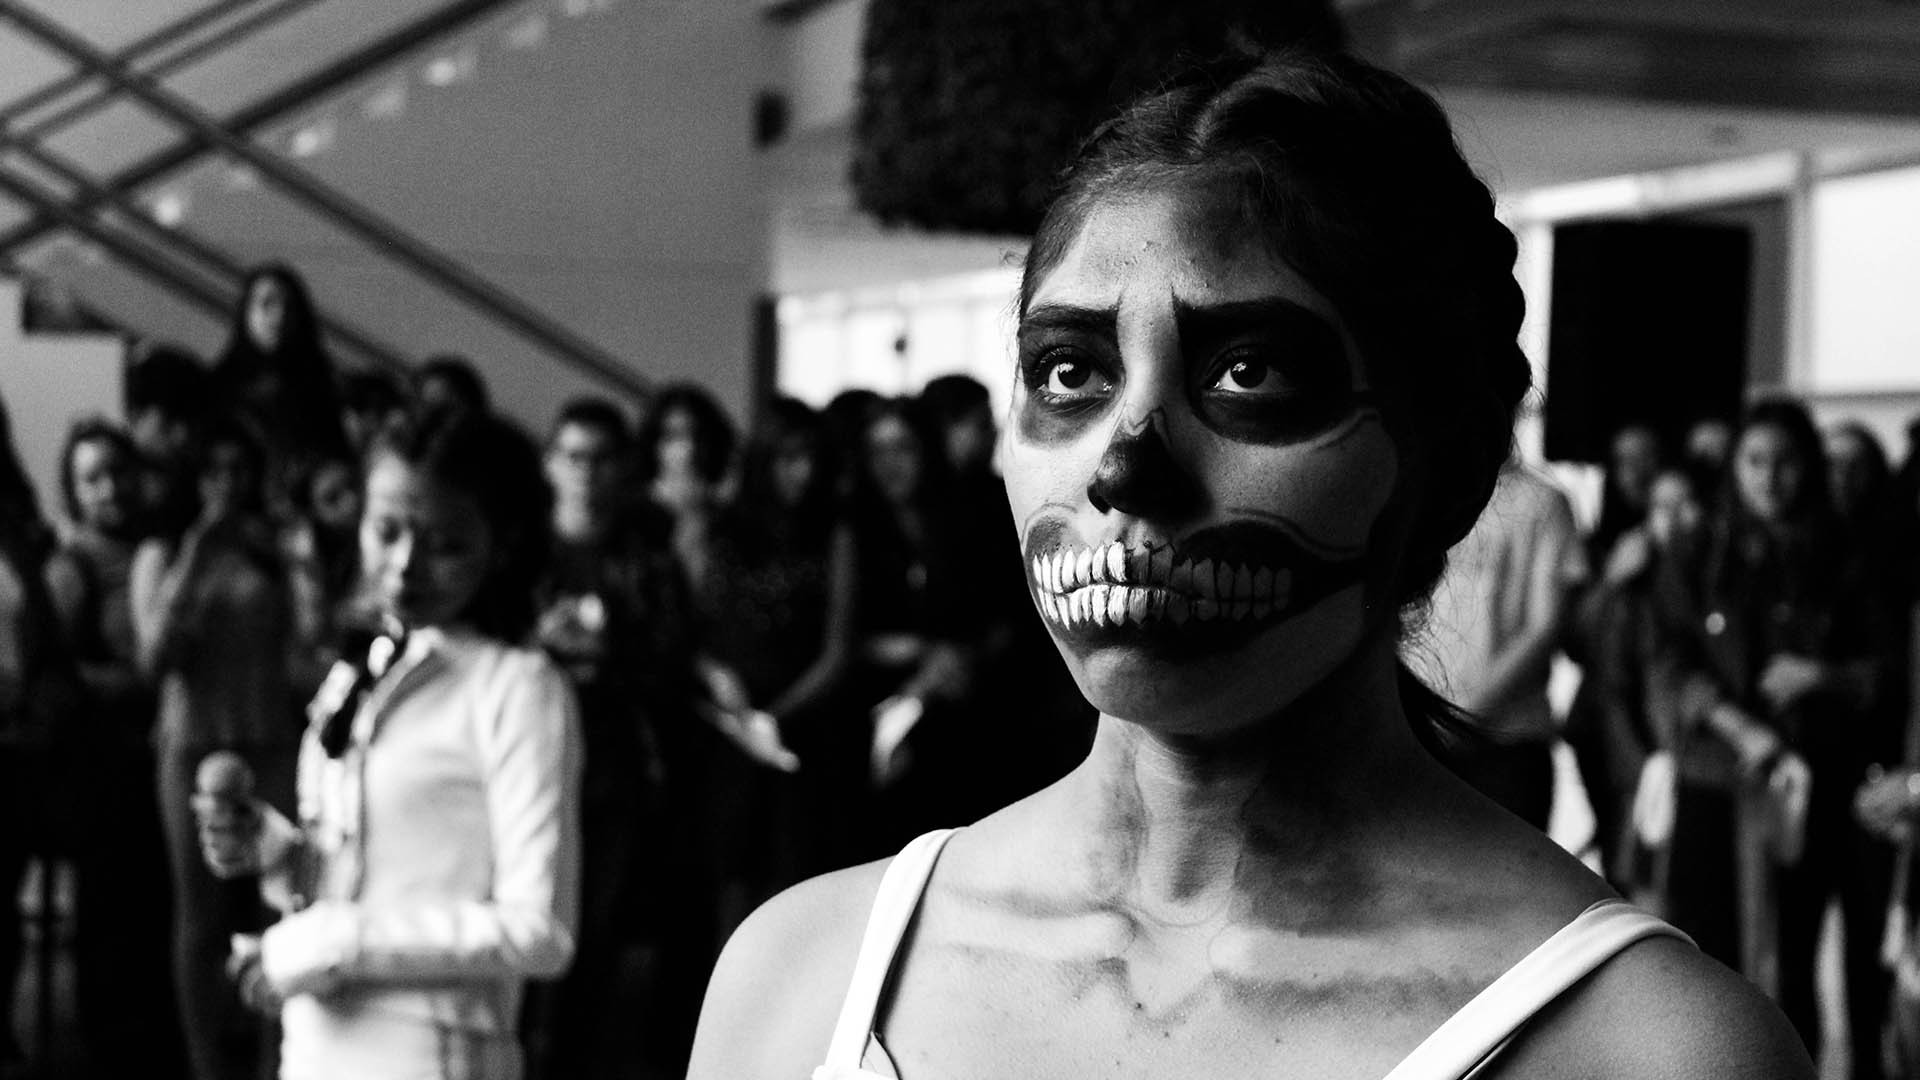 ¡Buu! El arte celebra el Día de muertos en PrepaTec Toluca y Metepec